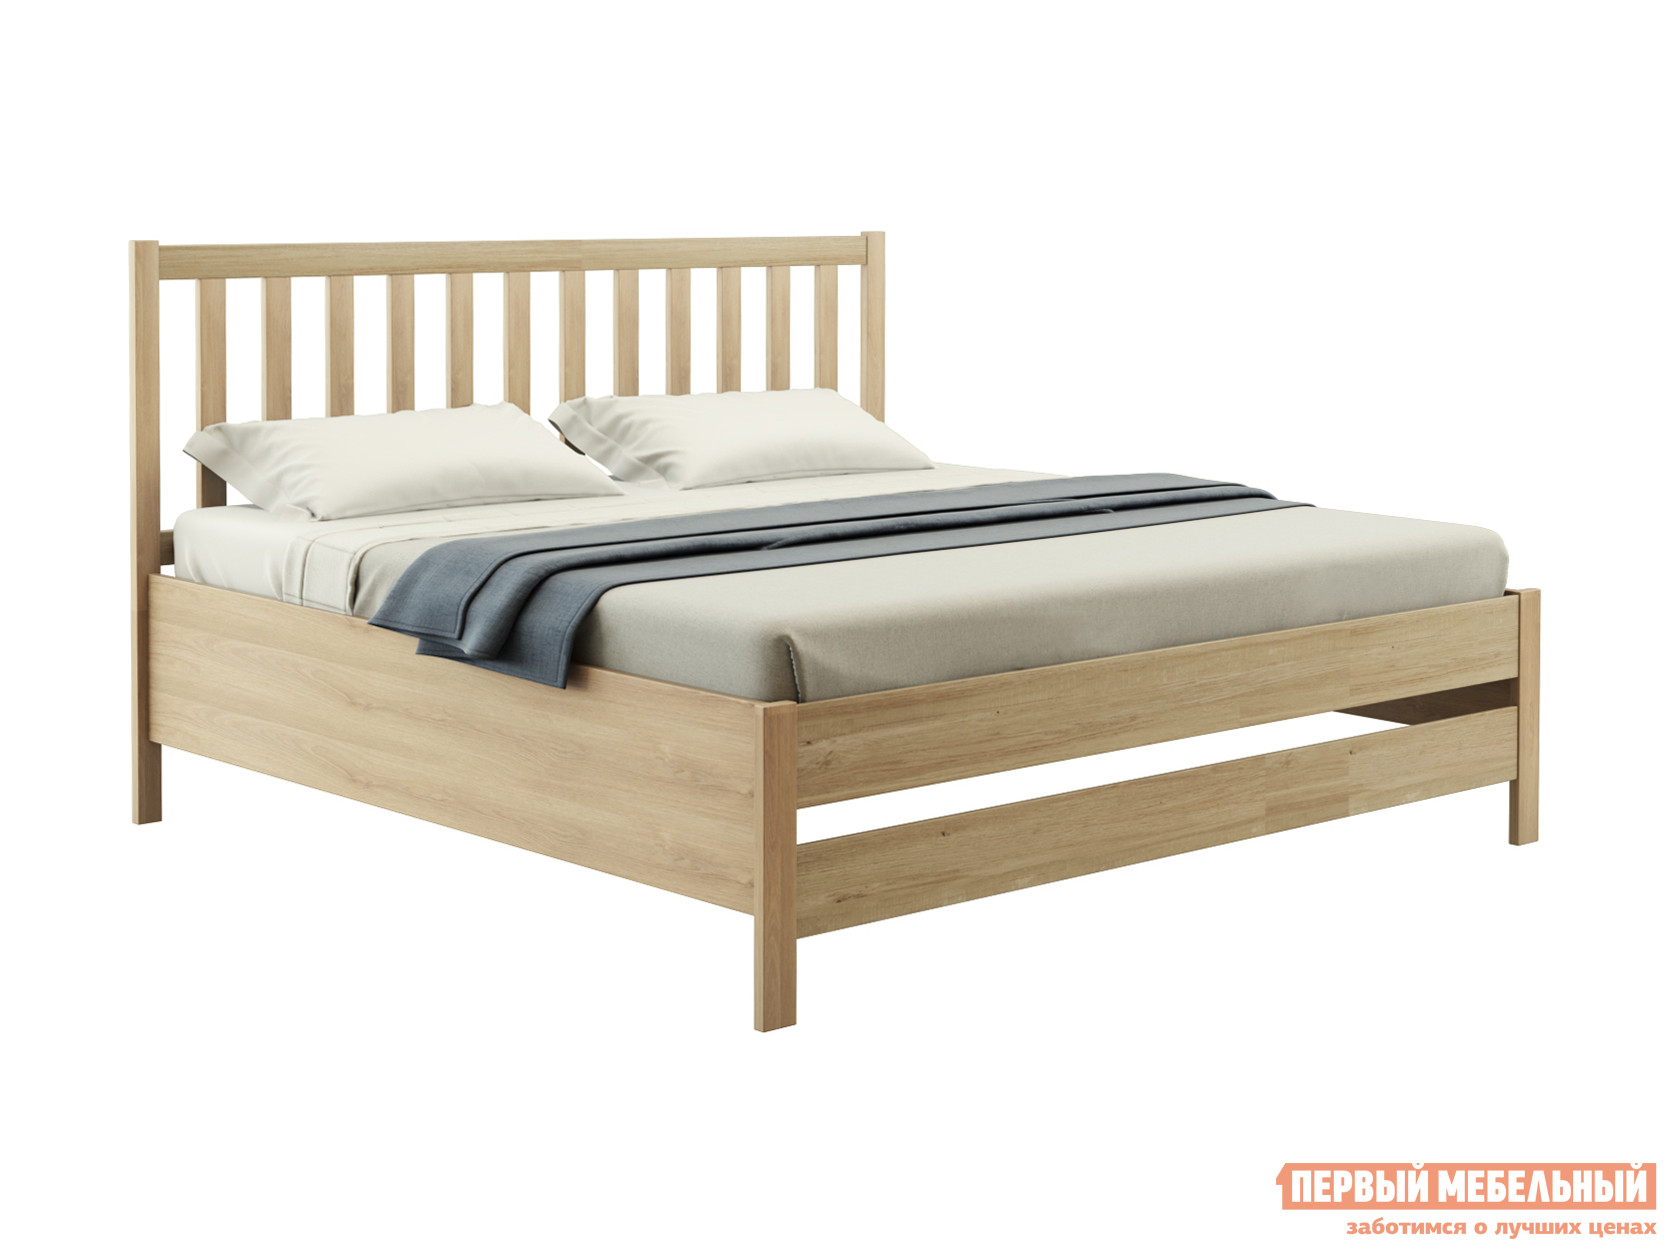 Двуспальная кровать  Массив Натуральный, 140х200 см